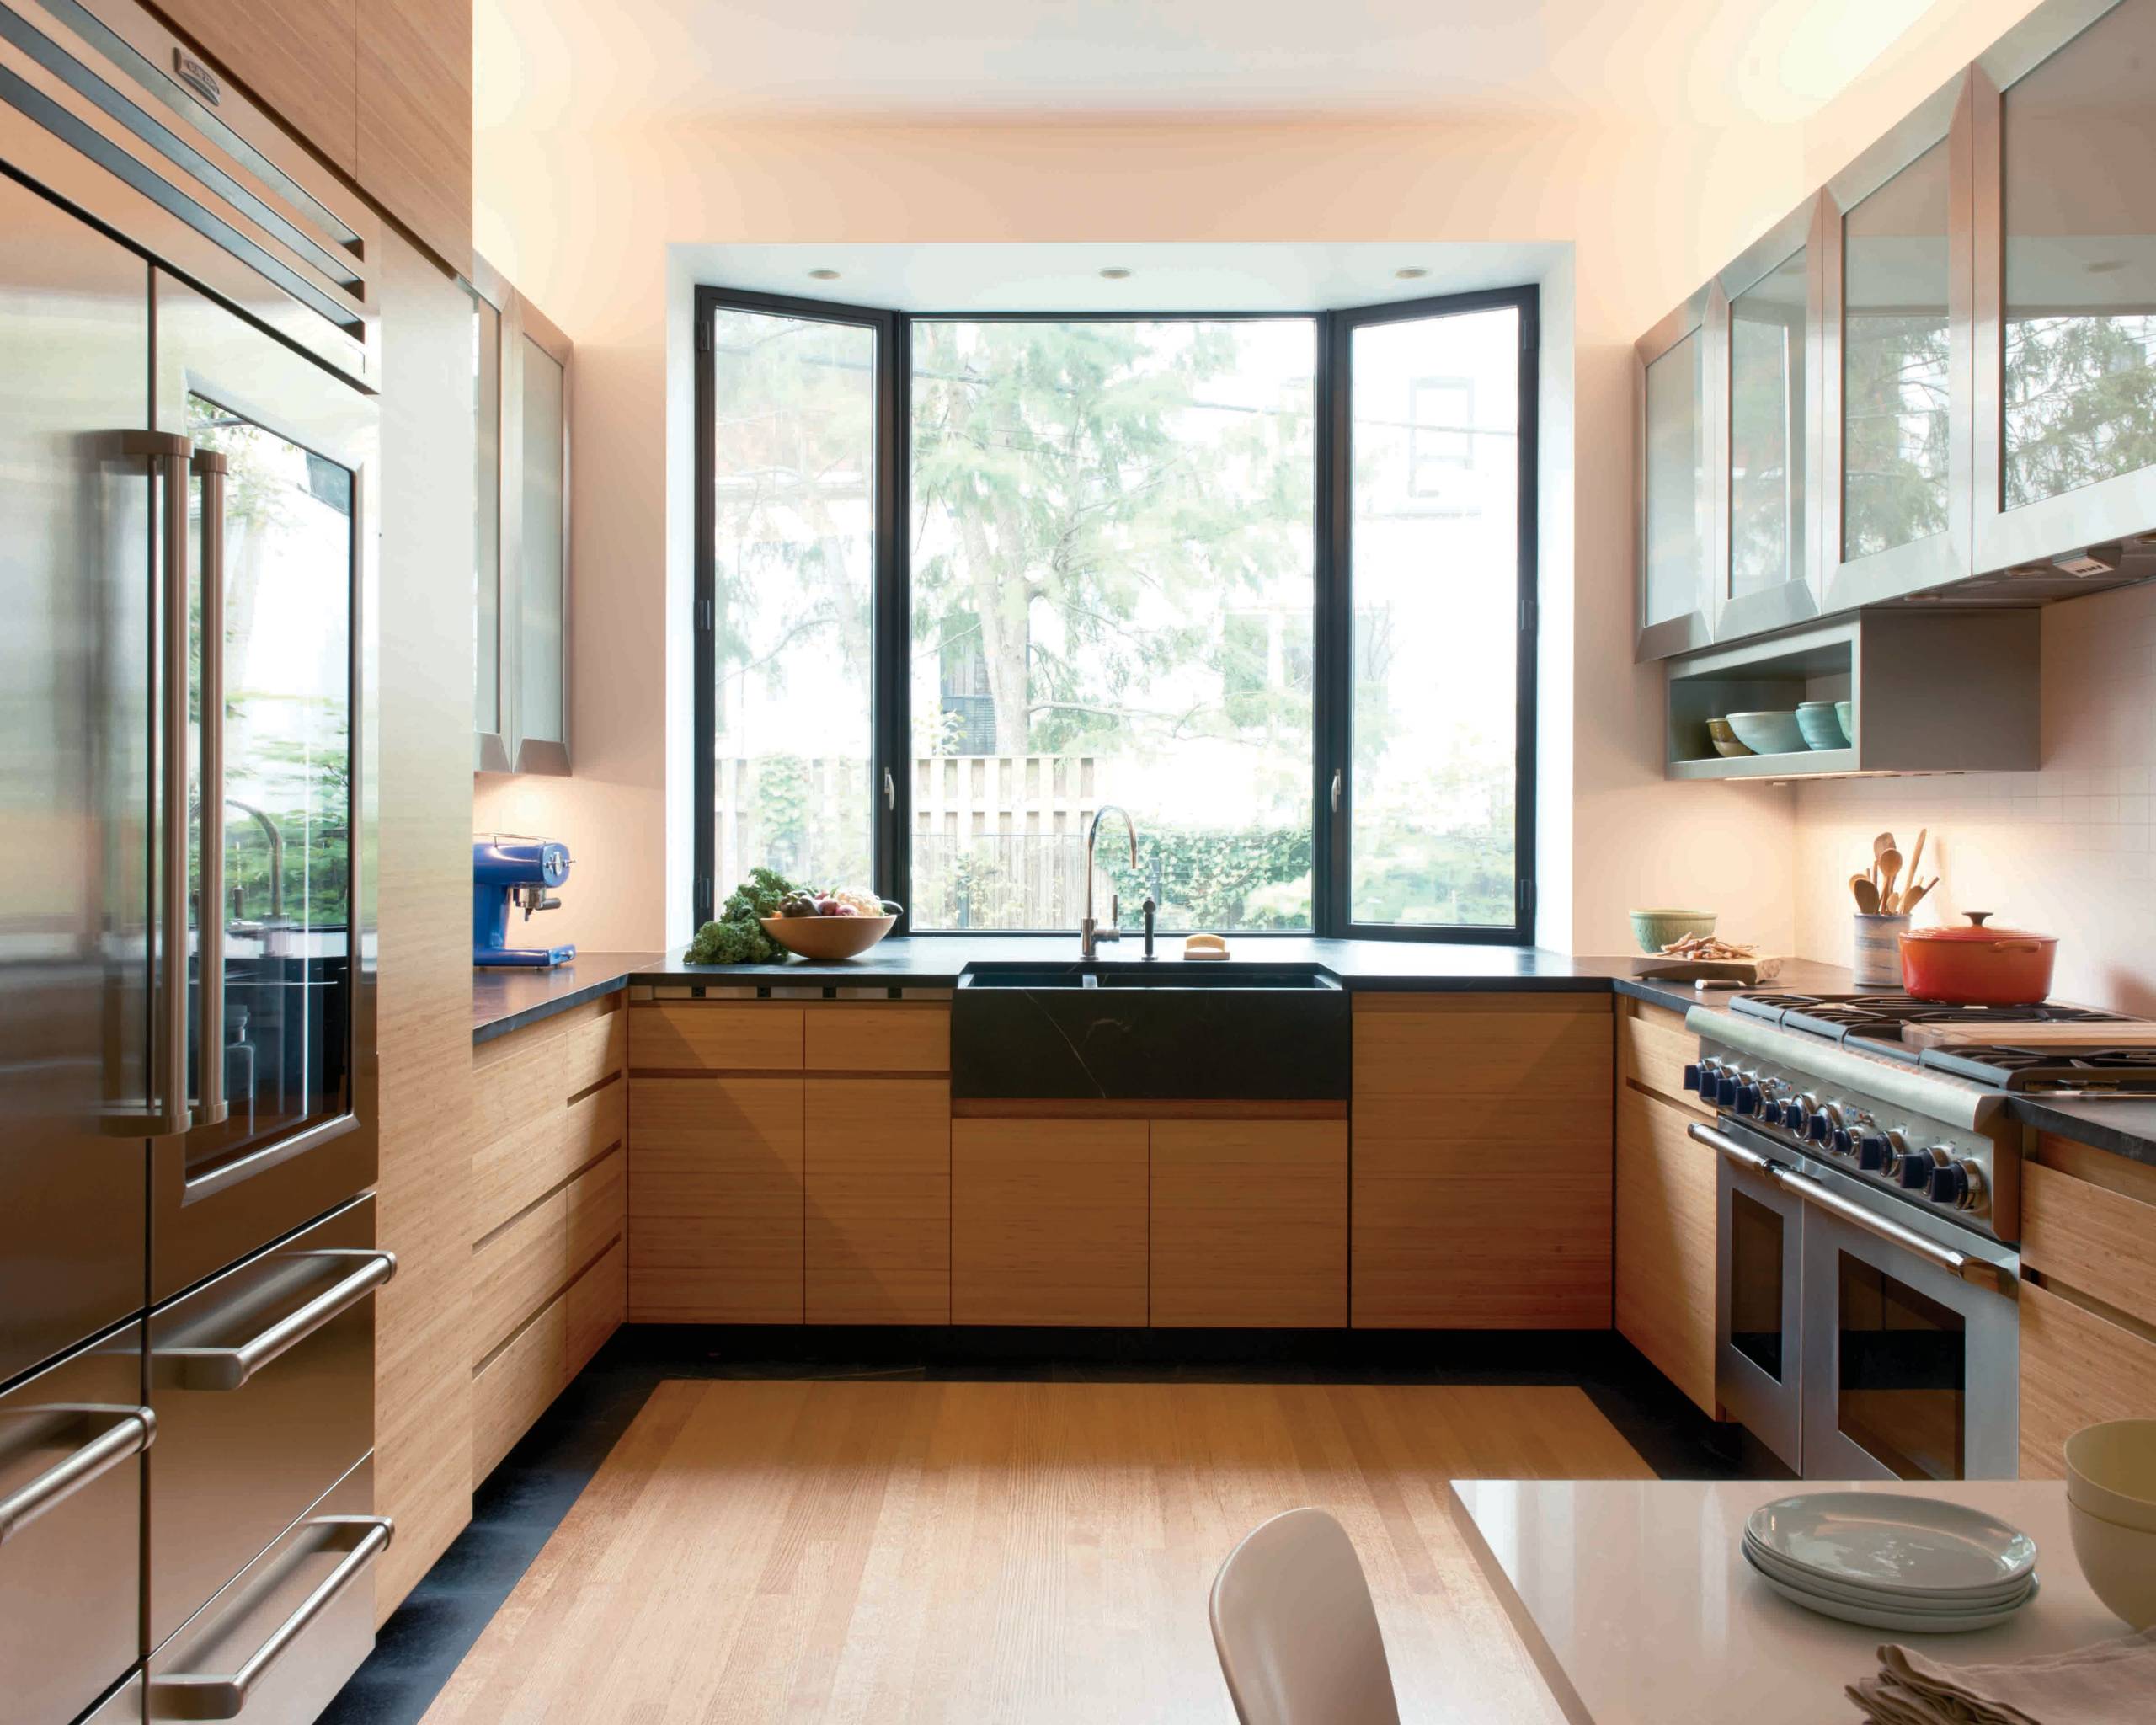 Кухня 3 3 дизайн с окном. Проект кухни с окном. Кухонный гарнитур с окном. Планировка кухни с большим окном. Кухня с панорамными окнами.